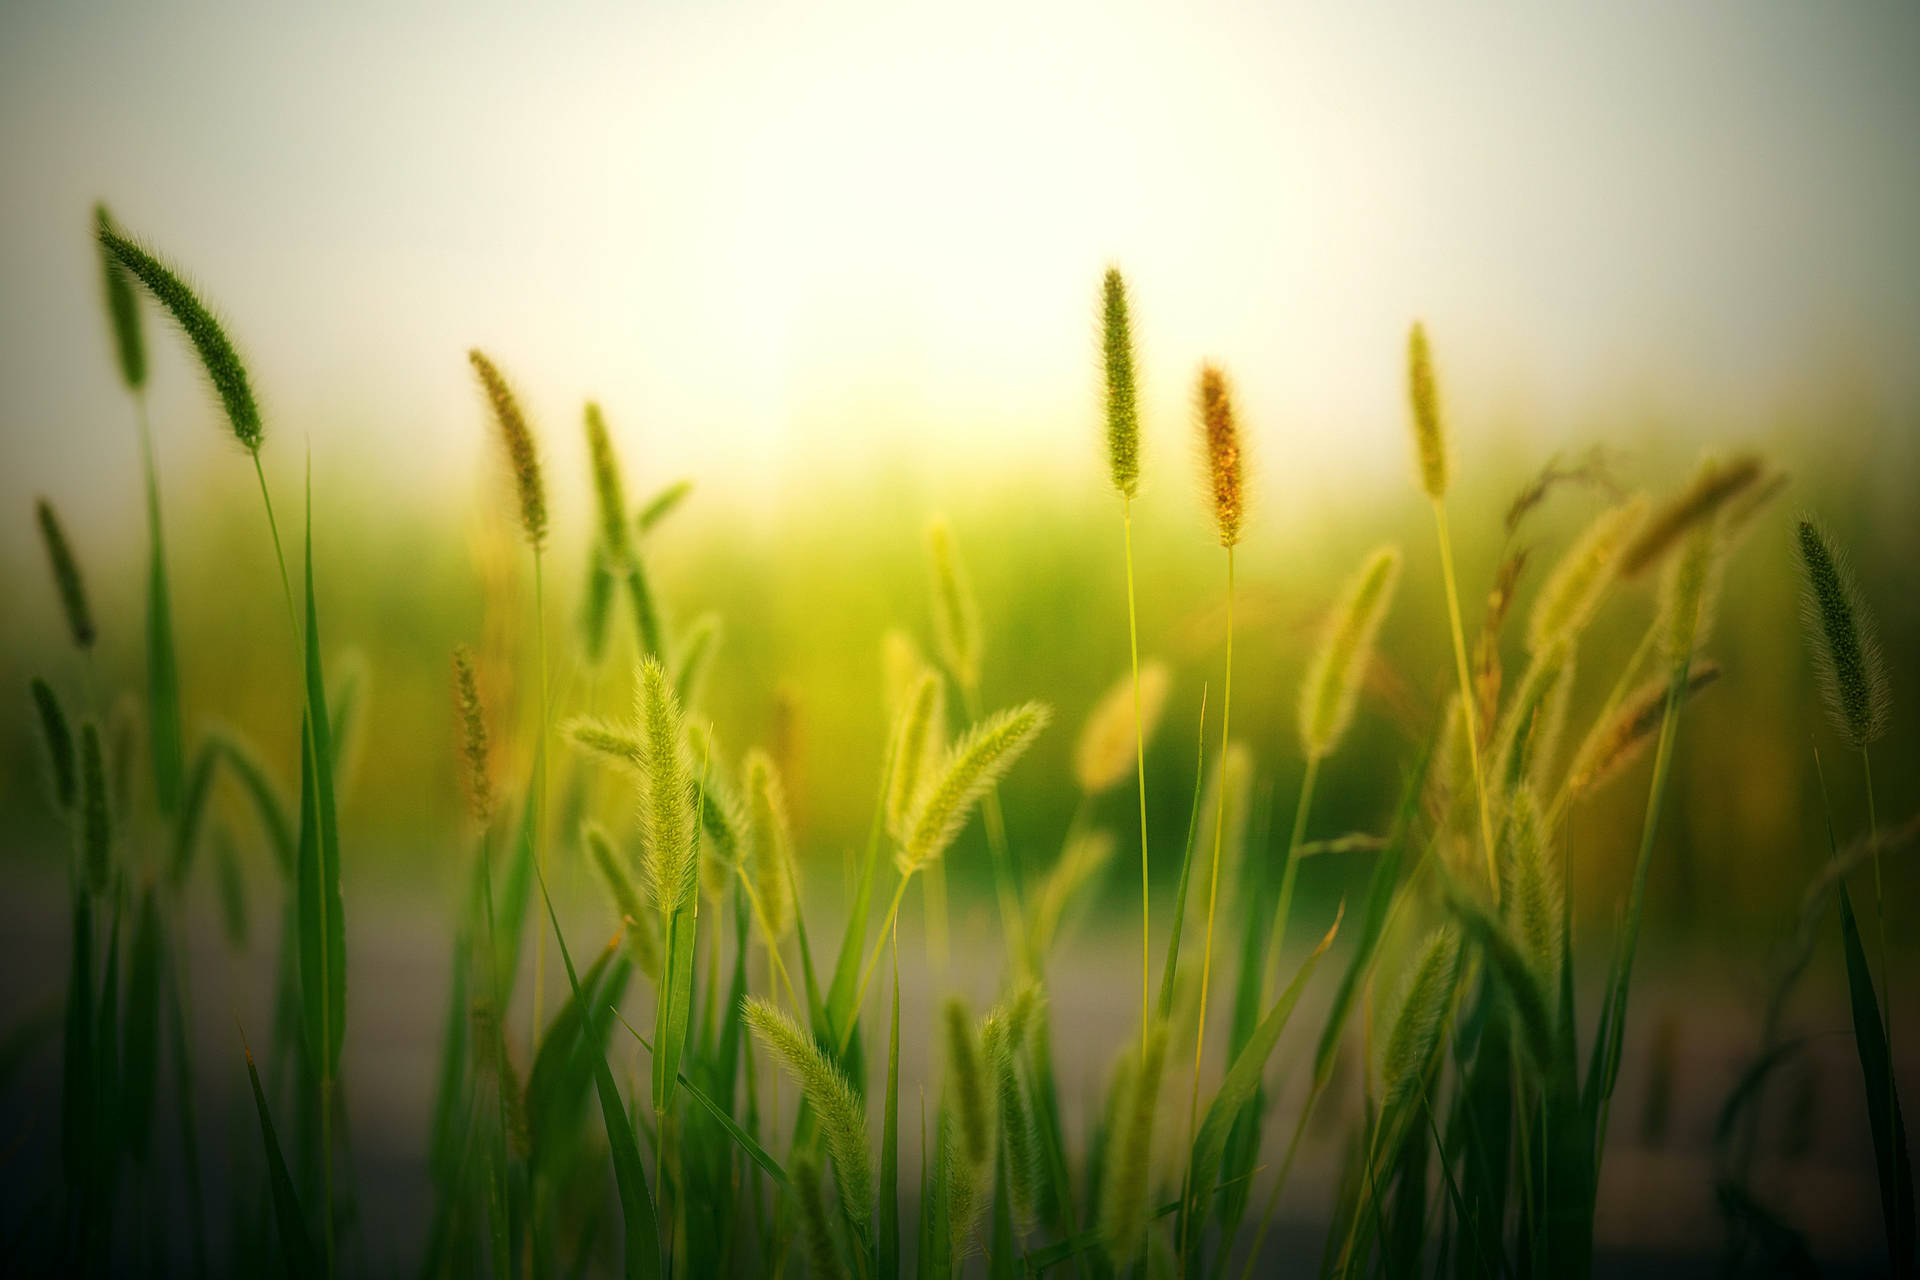 Aesthetic Hijau Grass